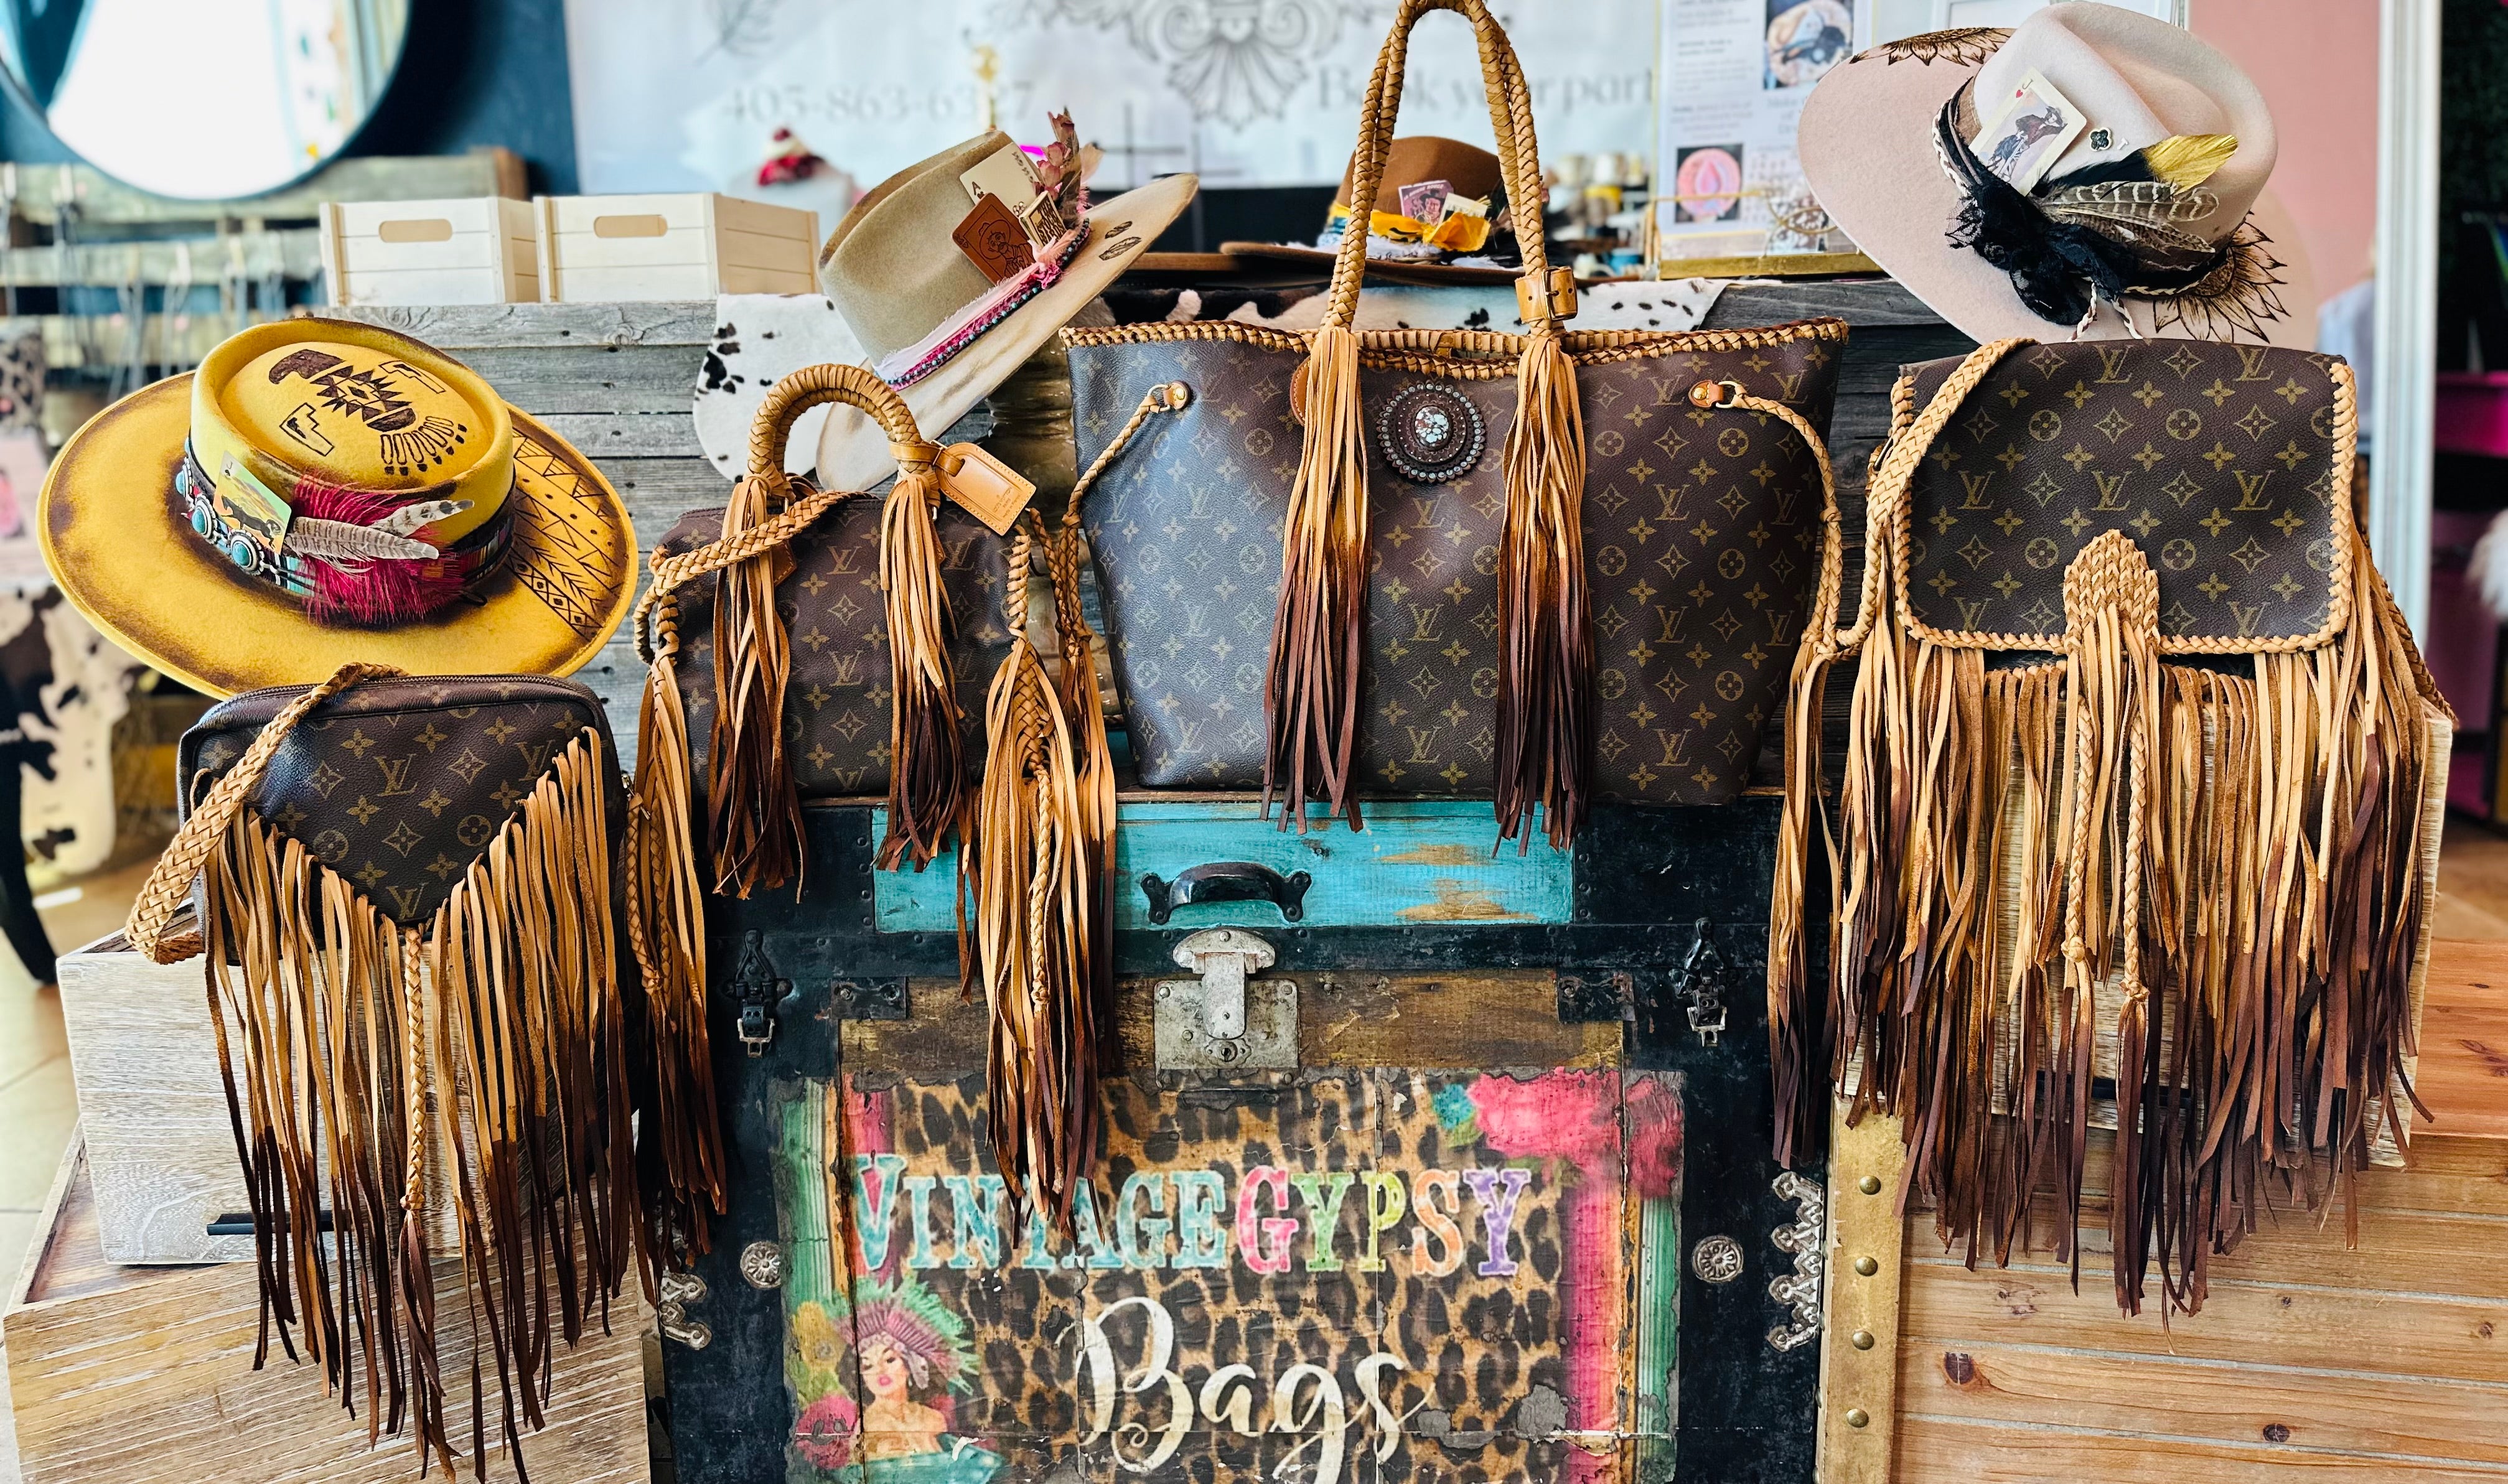 VintageGypsy Bags & Boutique – VintageGypsy Bags & Boutique